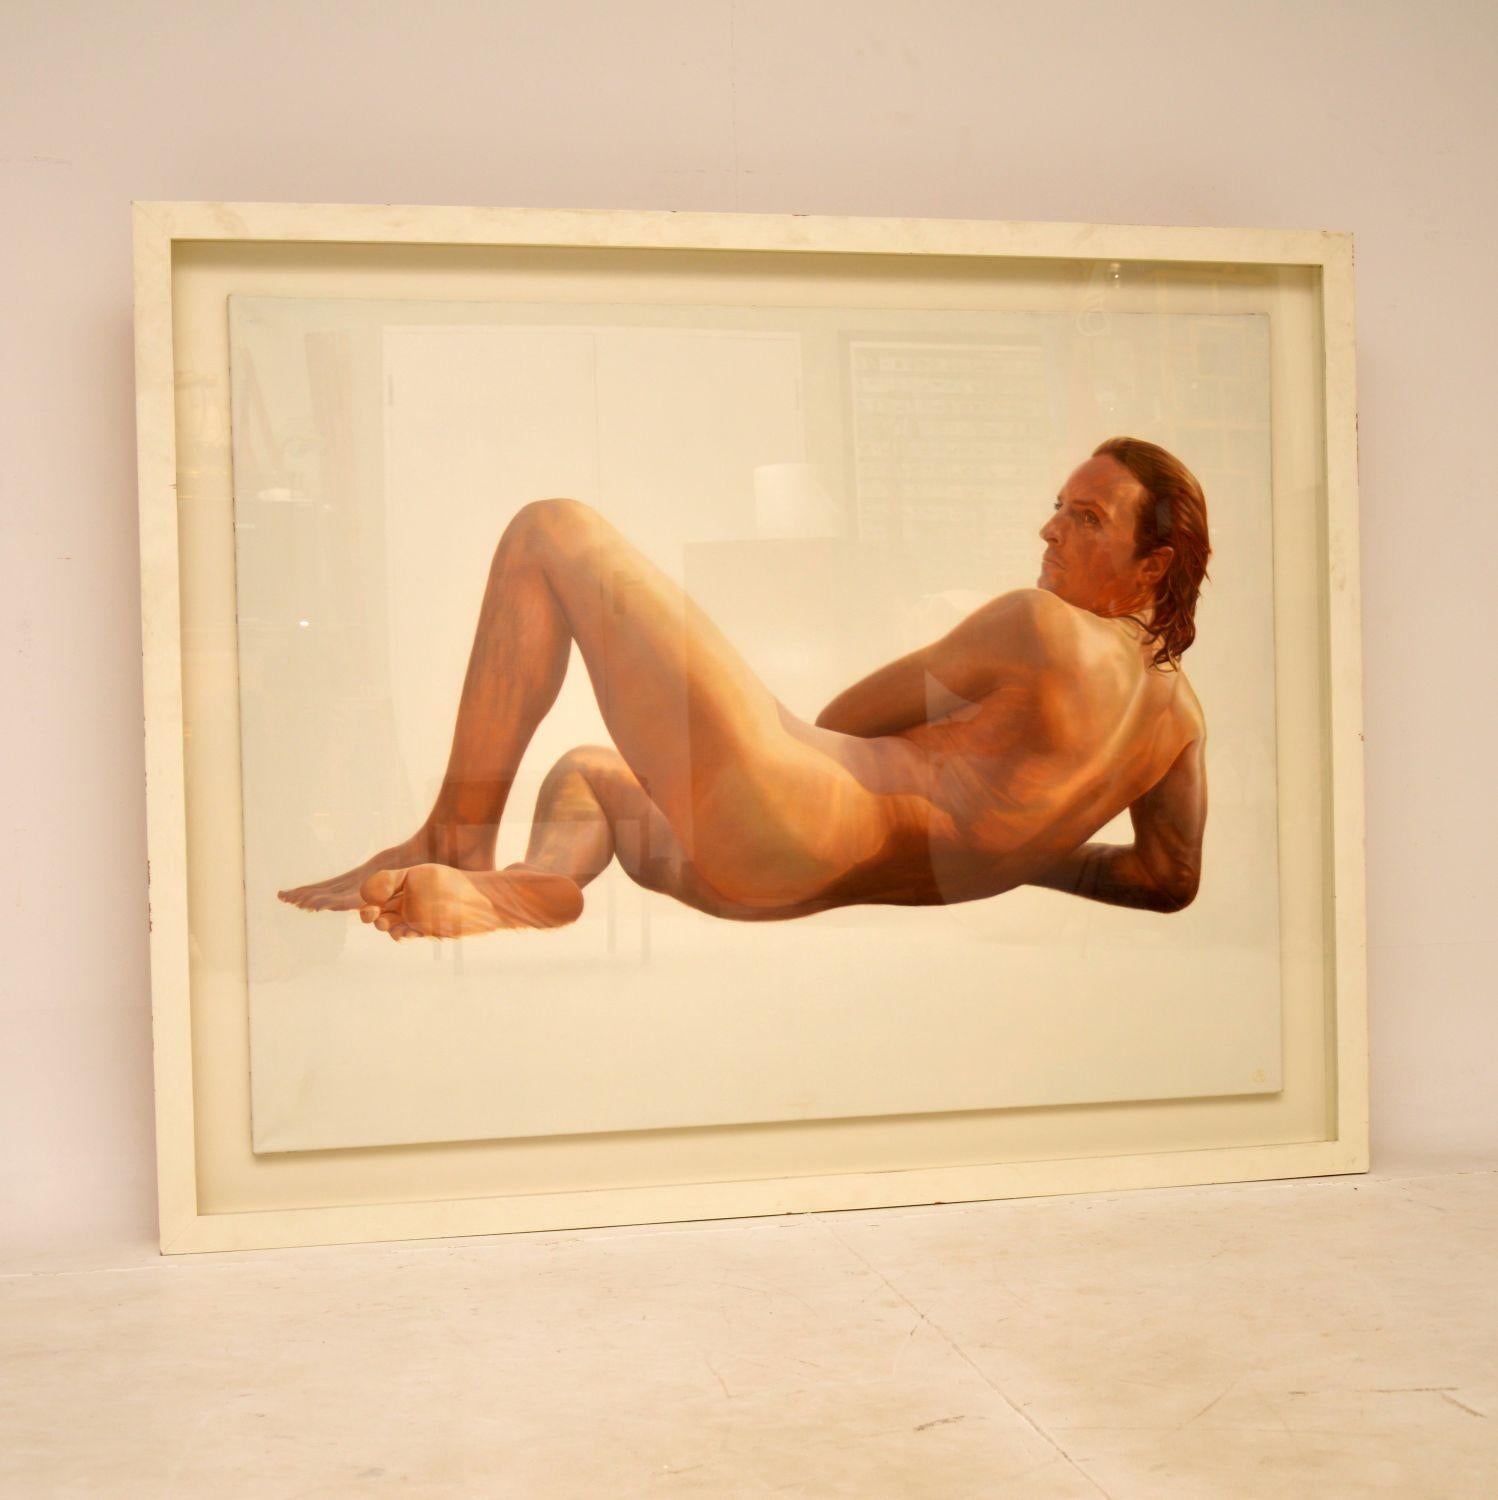 Ein großes und beeindruckendes Ölgemälde eines männlichen Aktes des renommierten britischen Künstlers Alan Brassington. Diese stammt aus dem späten 20. Jahrhundert.

Alan Brassington hat sich auf Porträts und das Malen von Pferden spezialisiert und